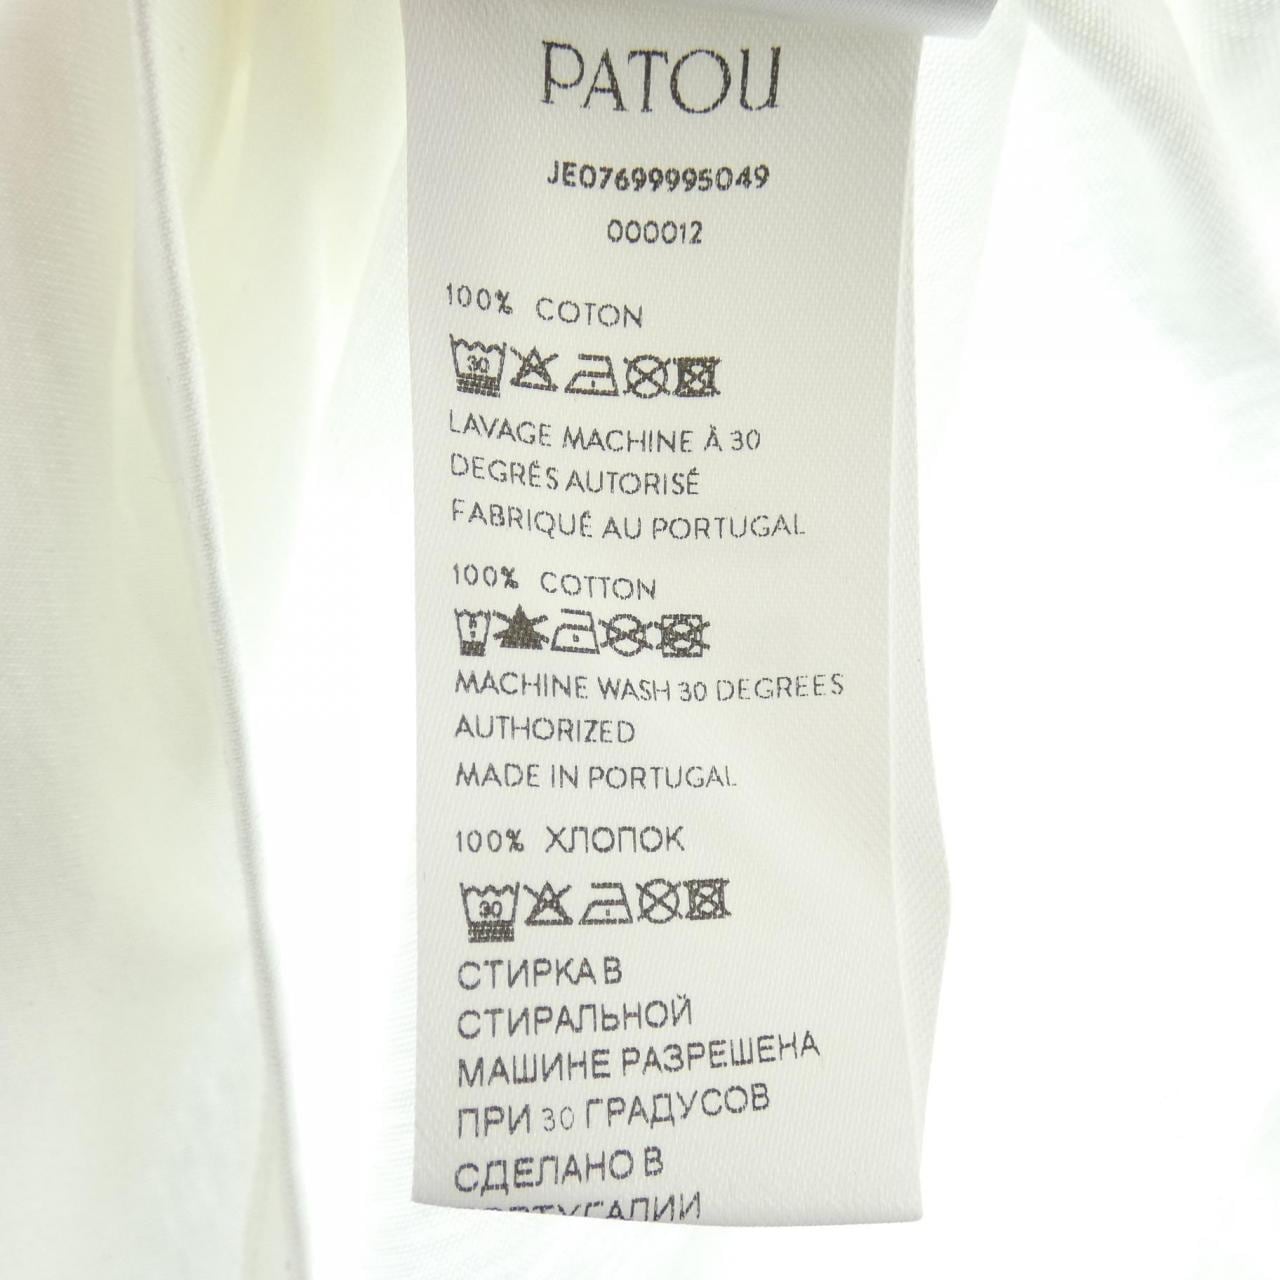 Patou T-shirt